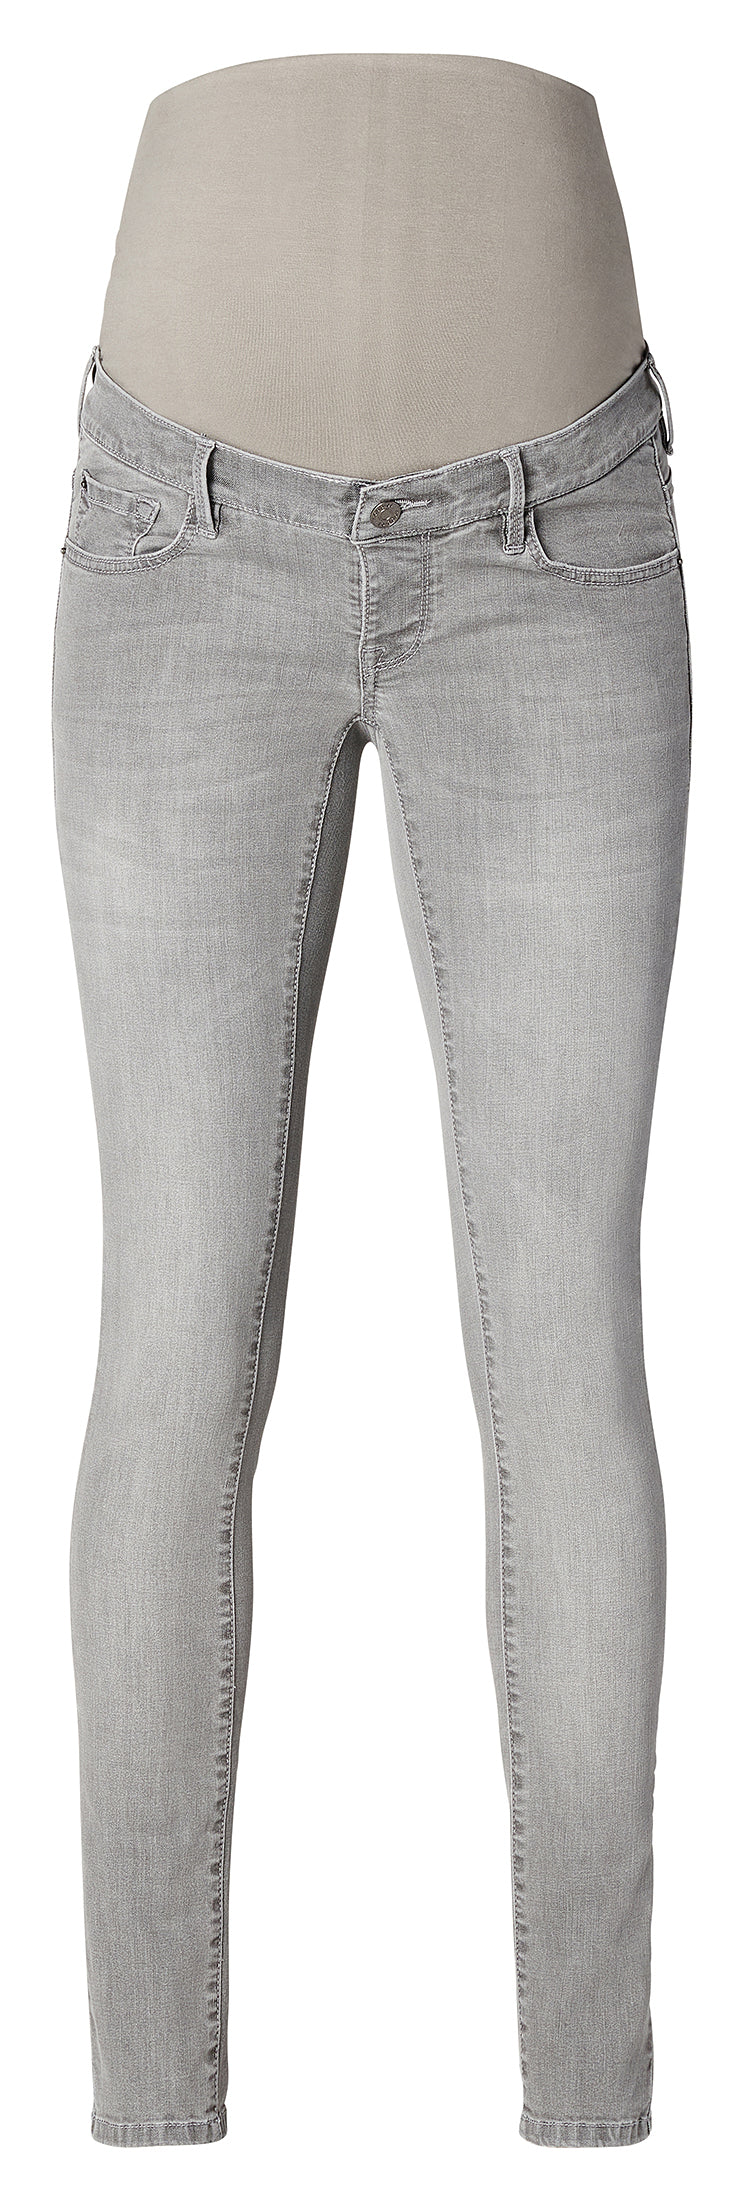 Skinny jeans Avi - Aged Grey